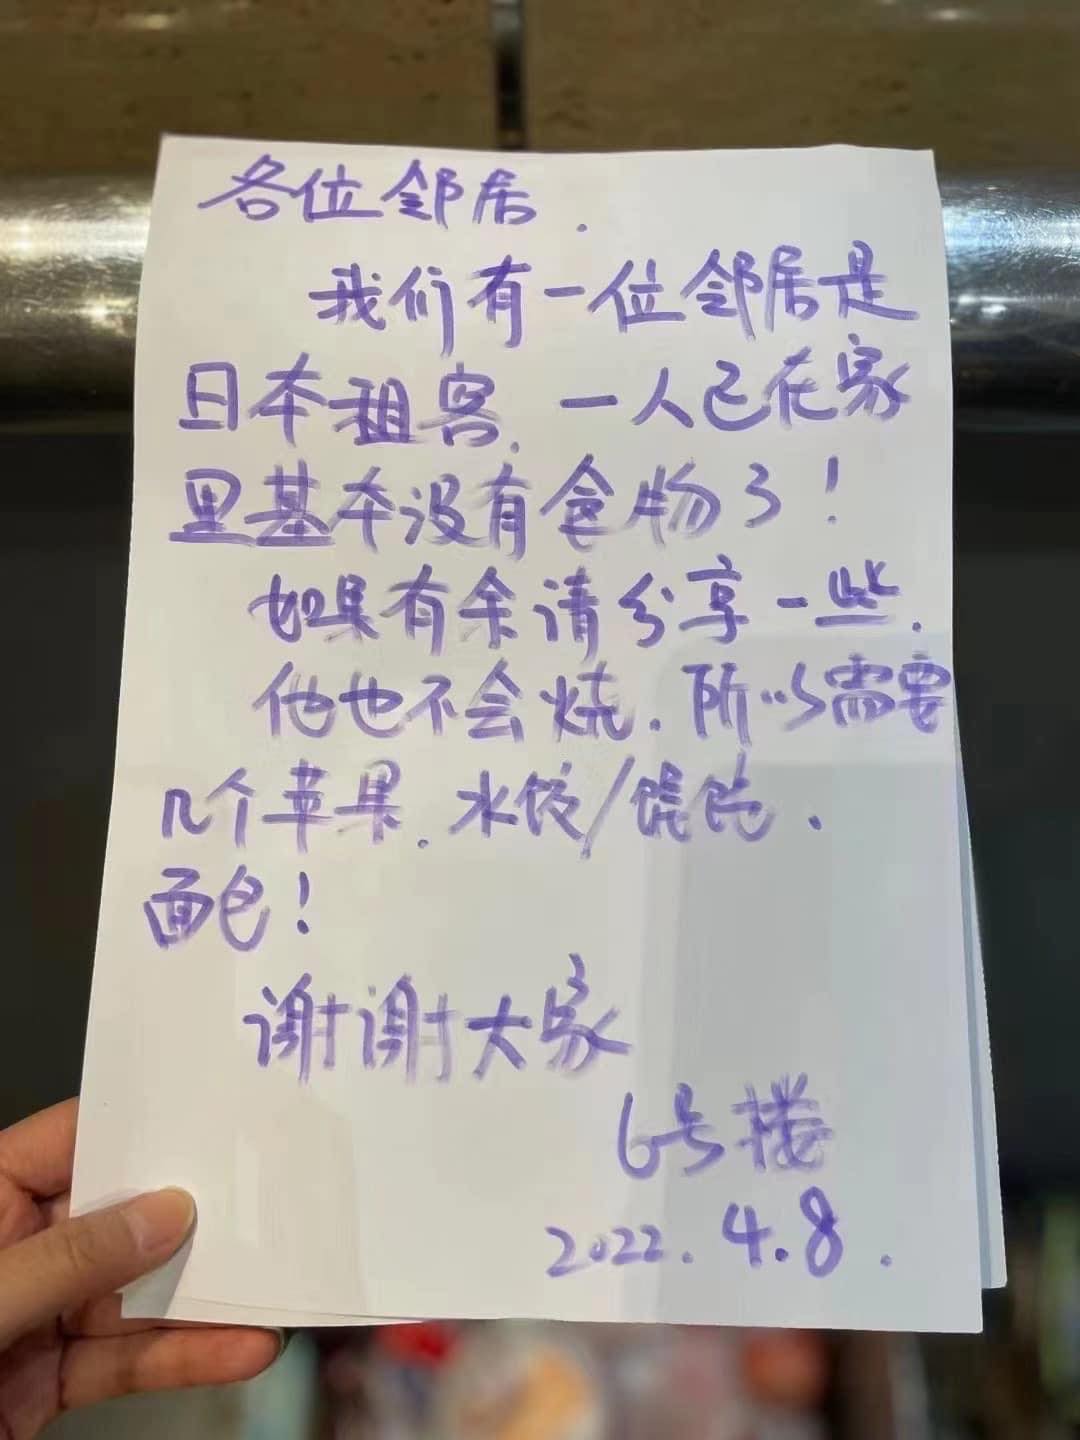 上海疫情封城慘況不斷 矢板明夫嘆:「一黨獨裁造成的人道悲劇」